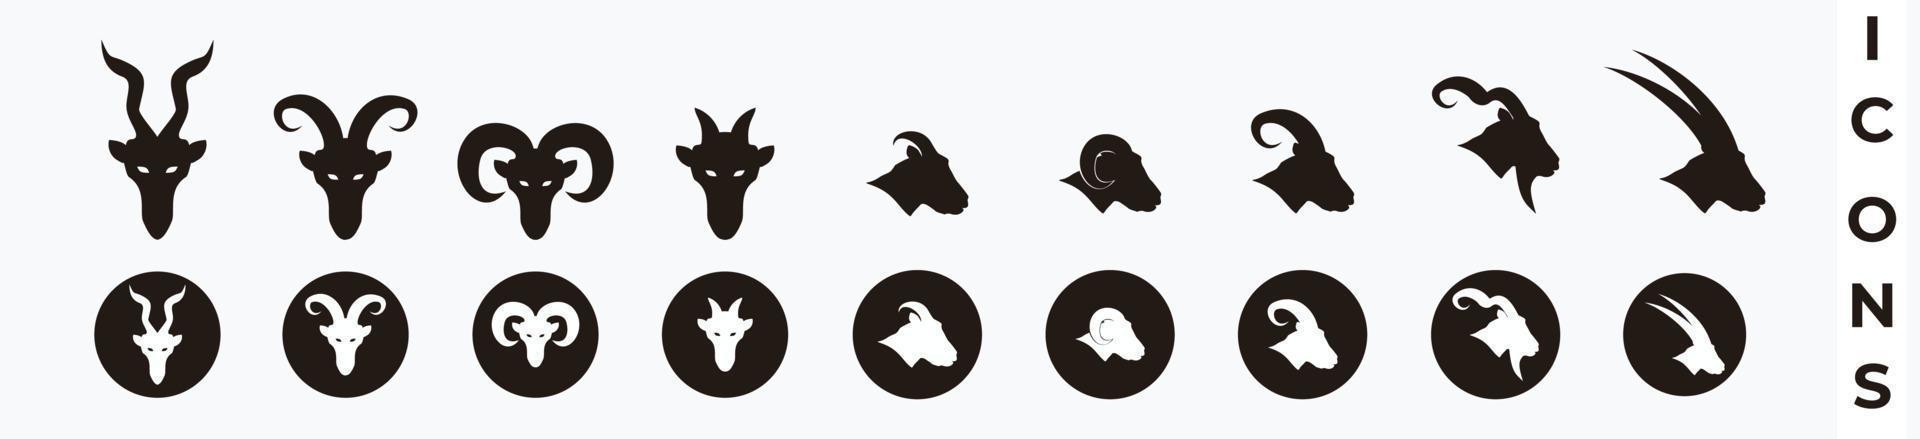 cabra, ovelha, cordeiro, conjunto de ícones de cabeça de cabra de chifre grande. cabra cabeça de silhueta isolada em branco vetor